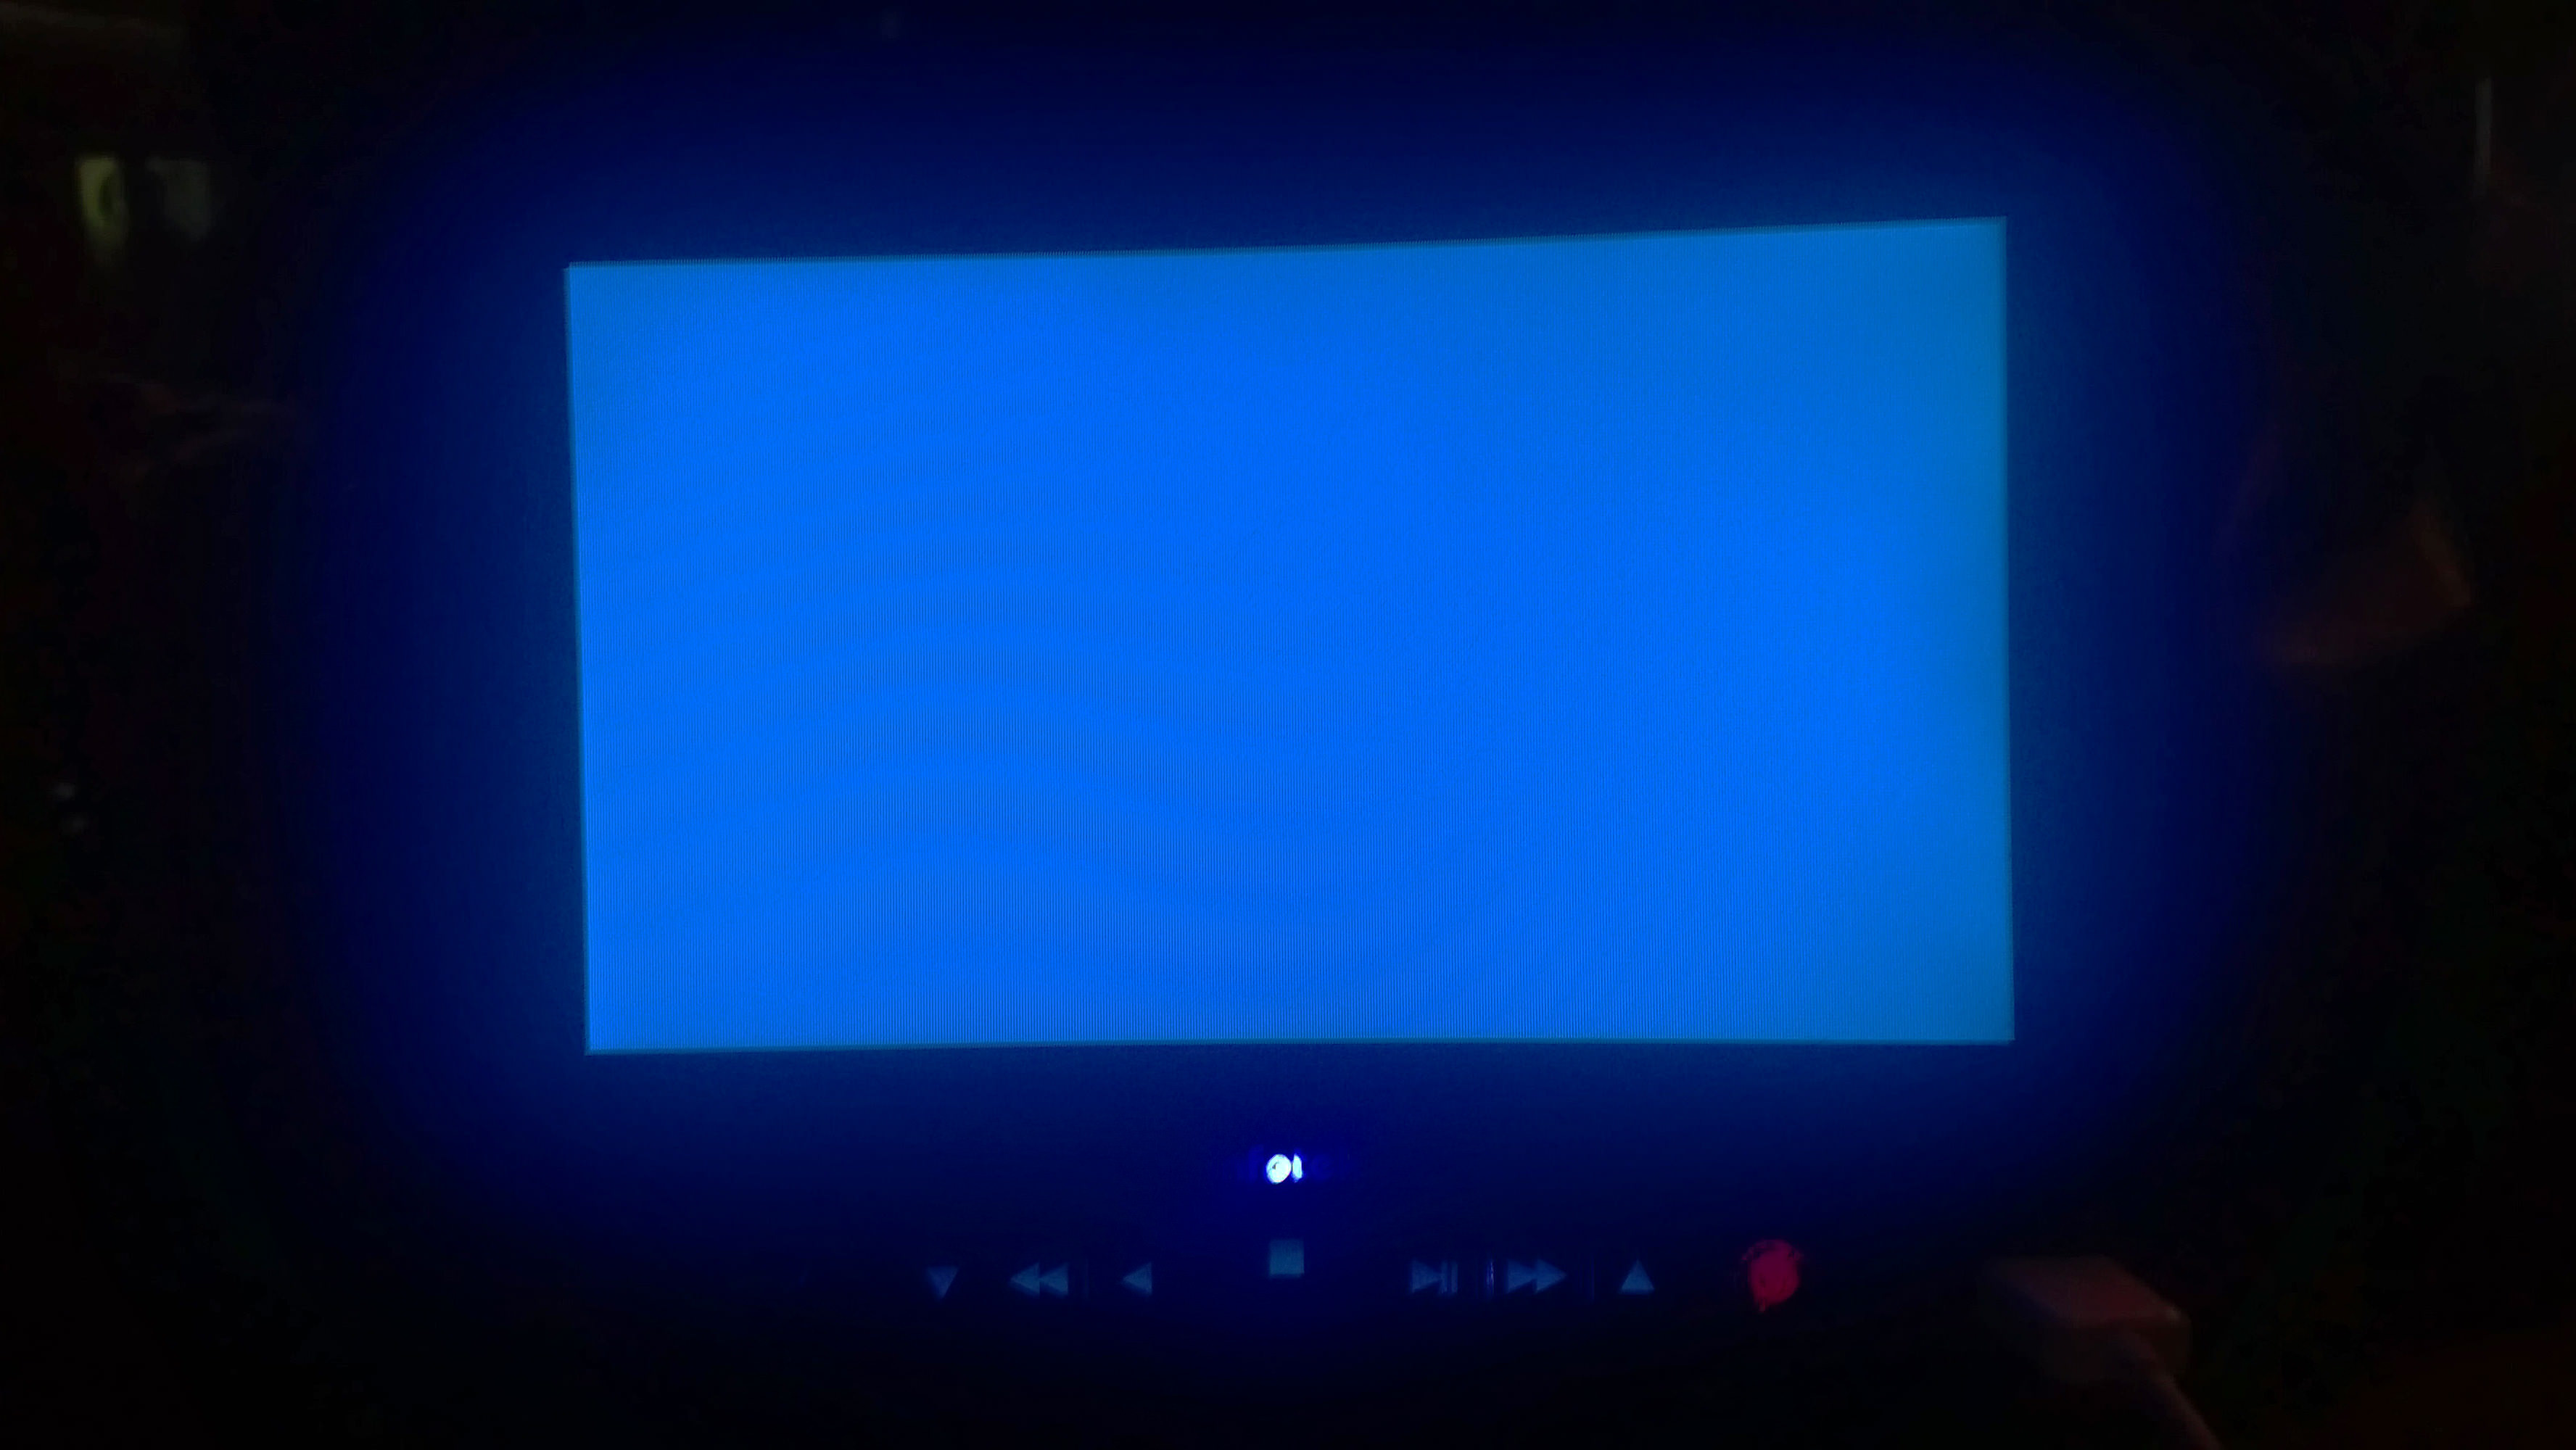 Metro turizm�in çalışmayan, mavi ekran vermiş koltuk arkası televizyonu